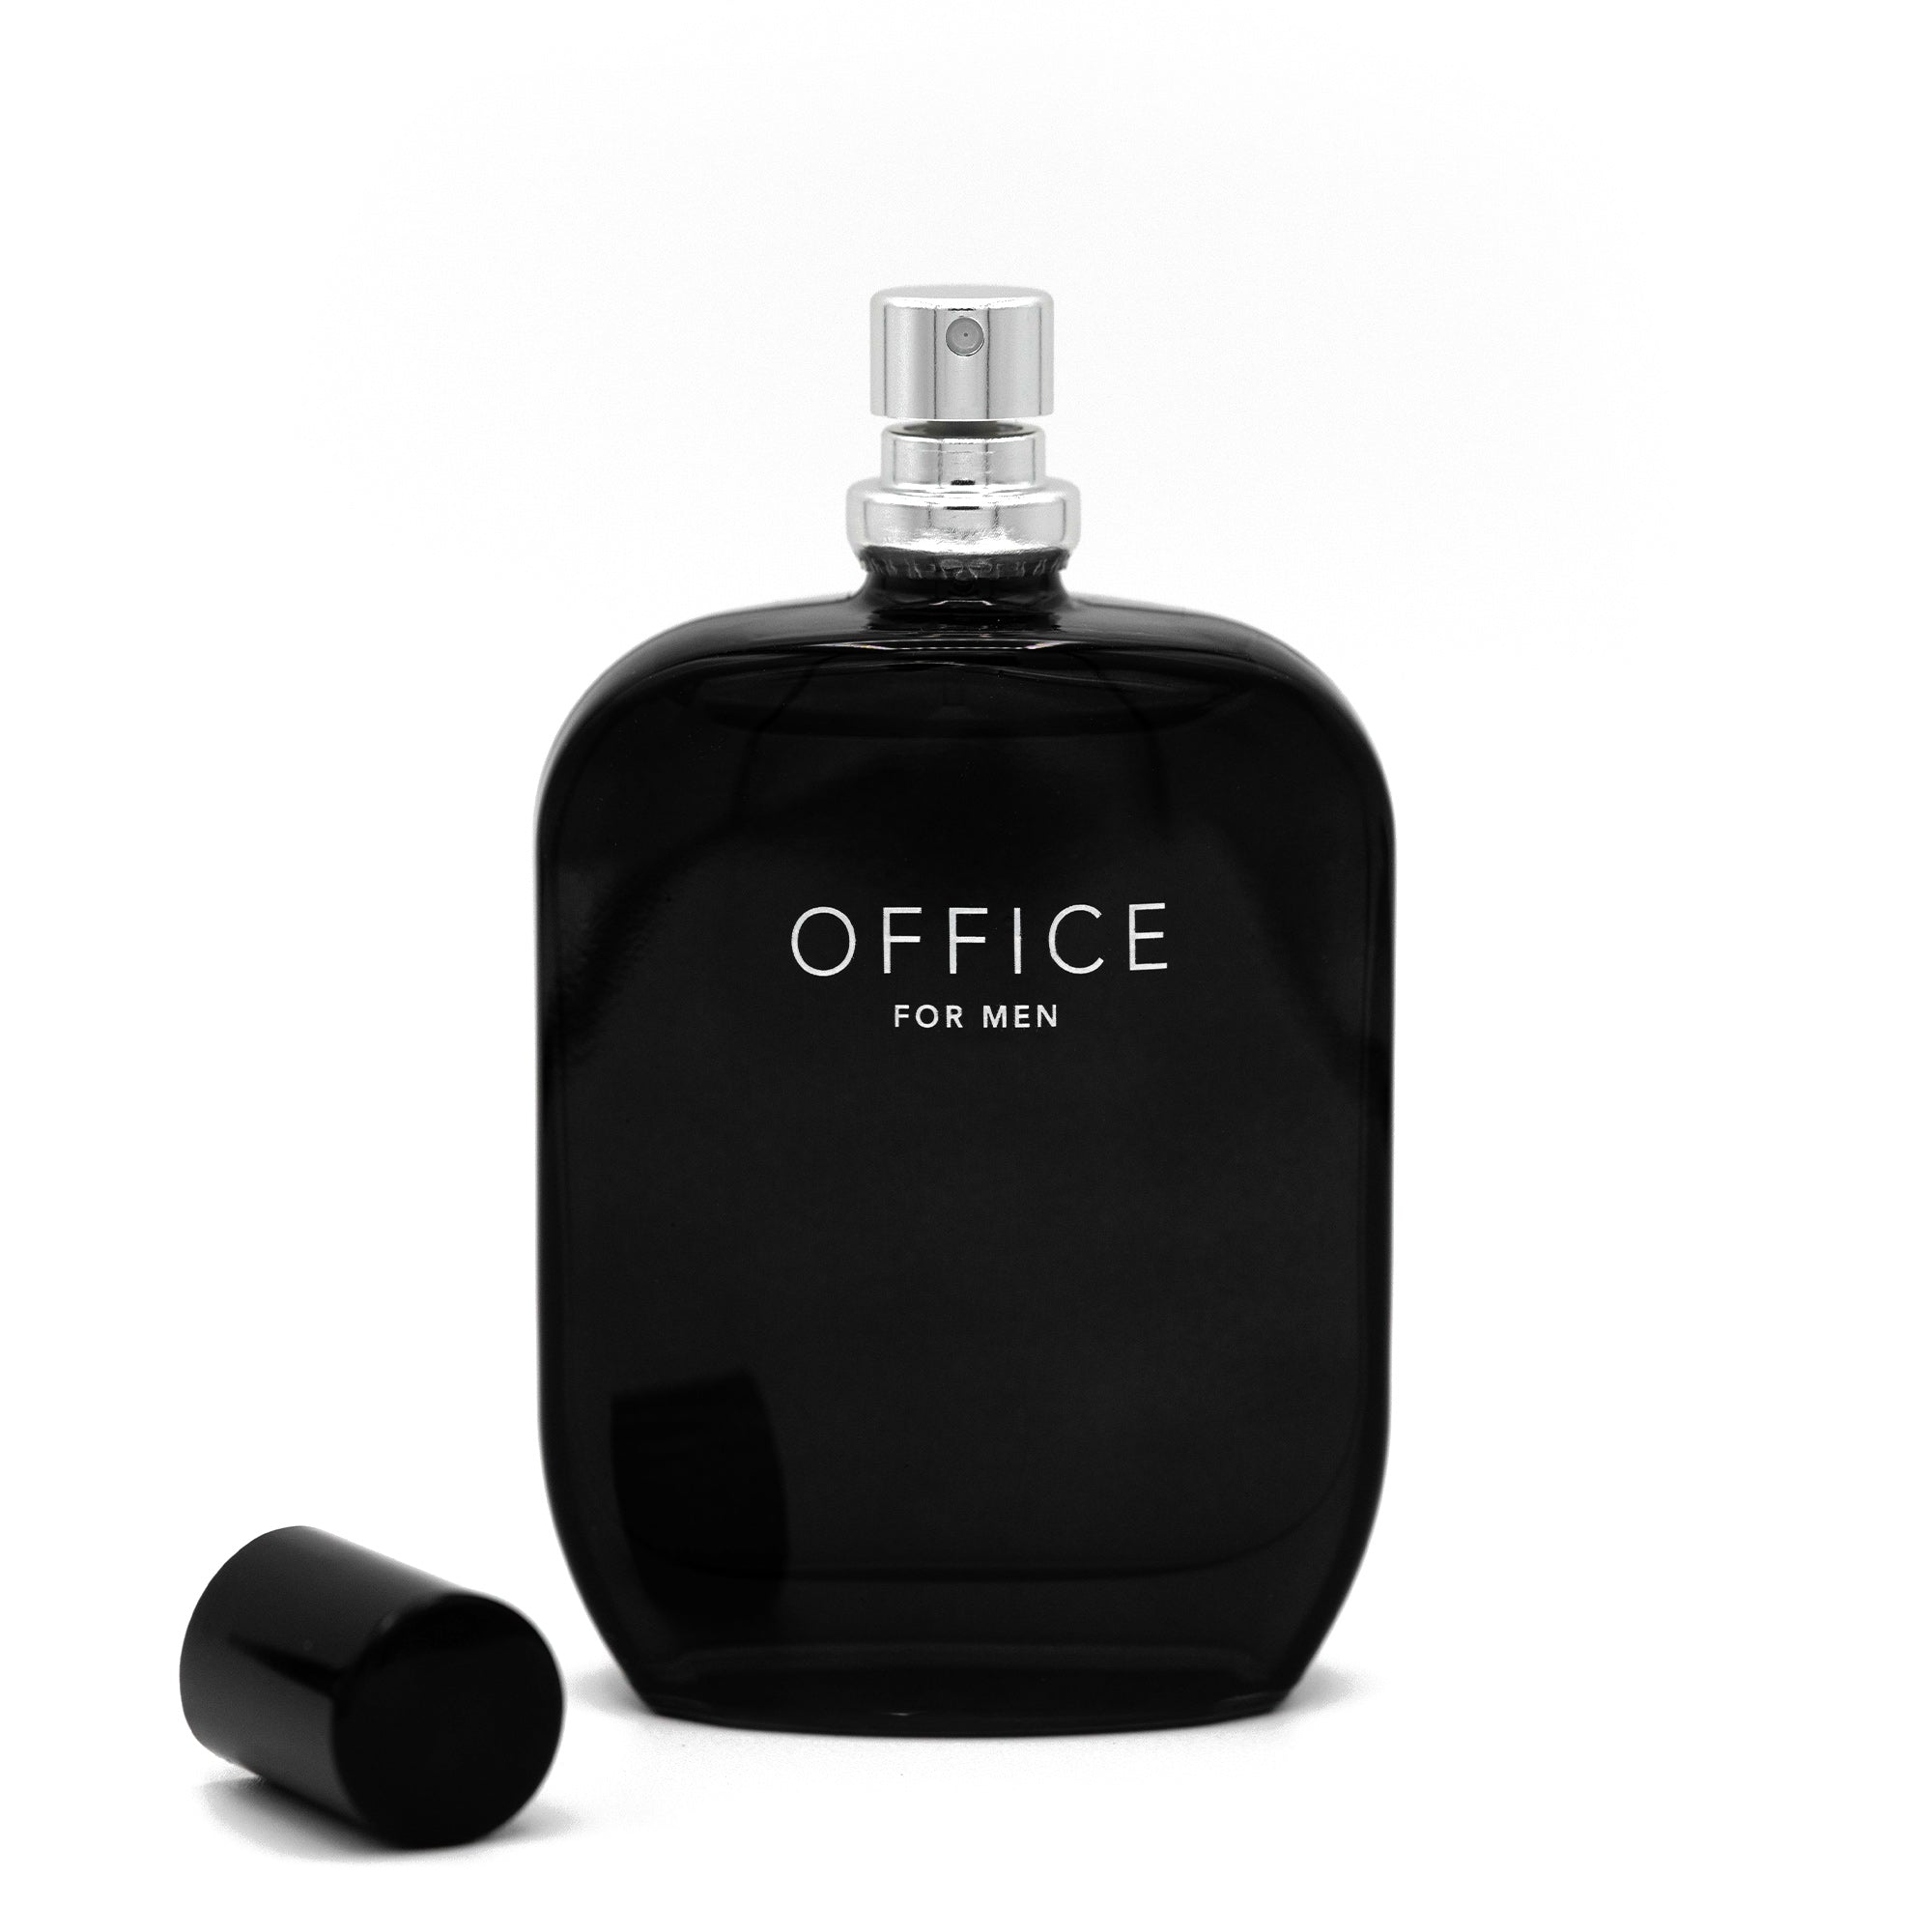 OFFICE for Men fragrance bottle 50ml open cap